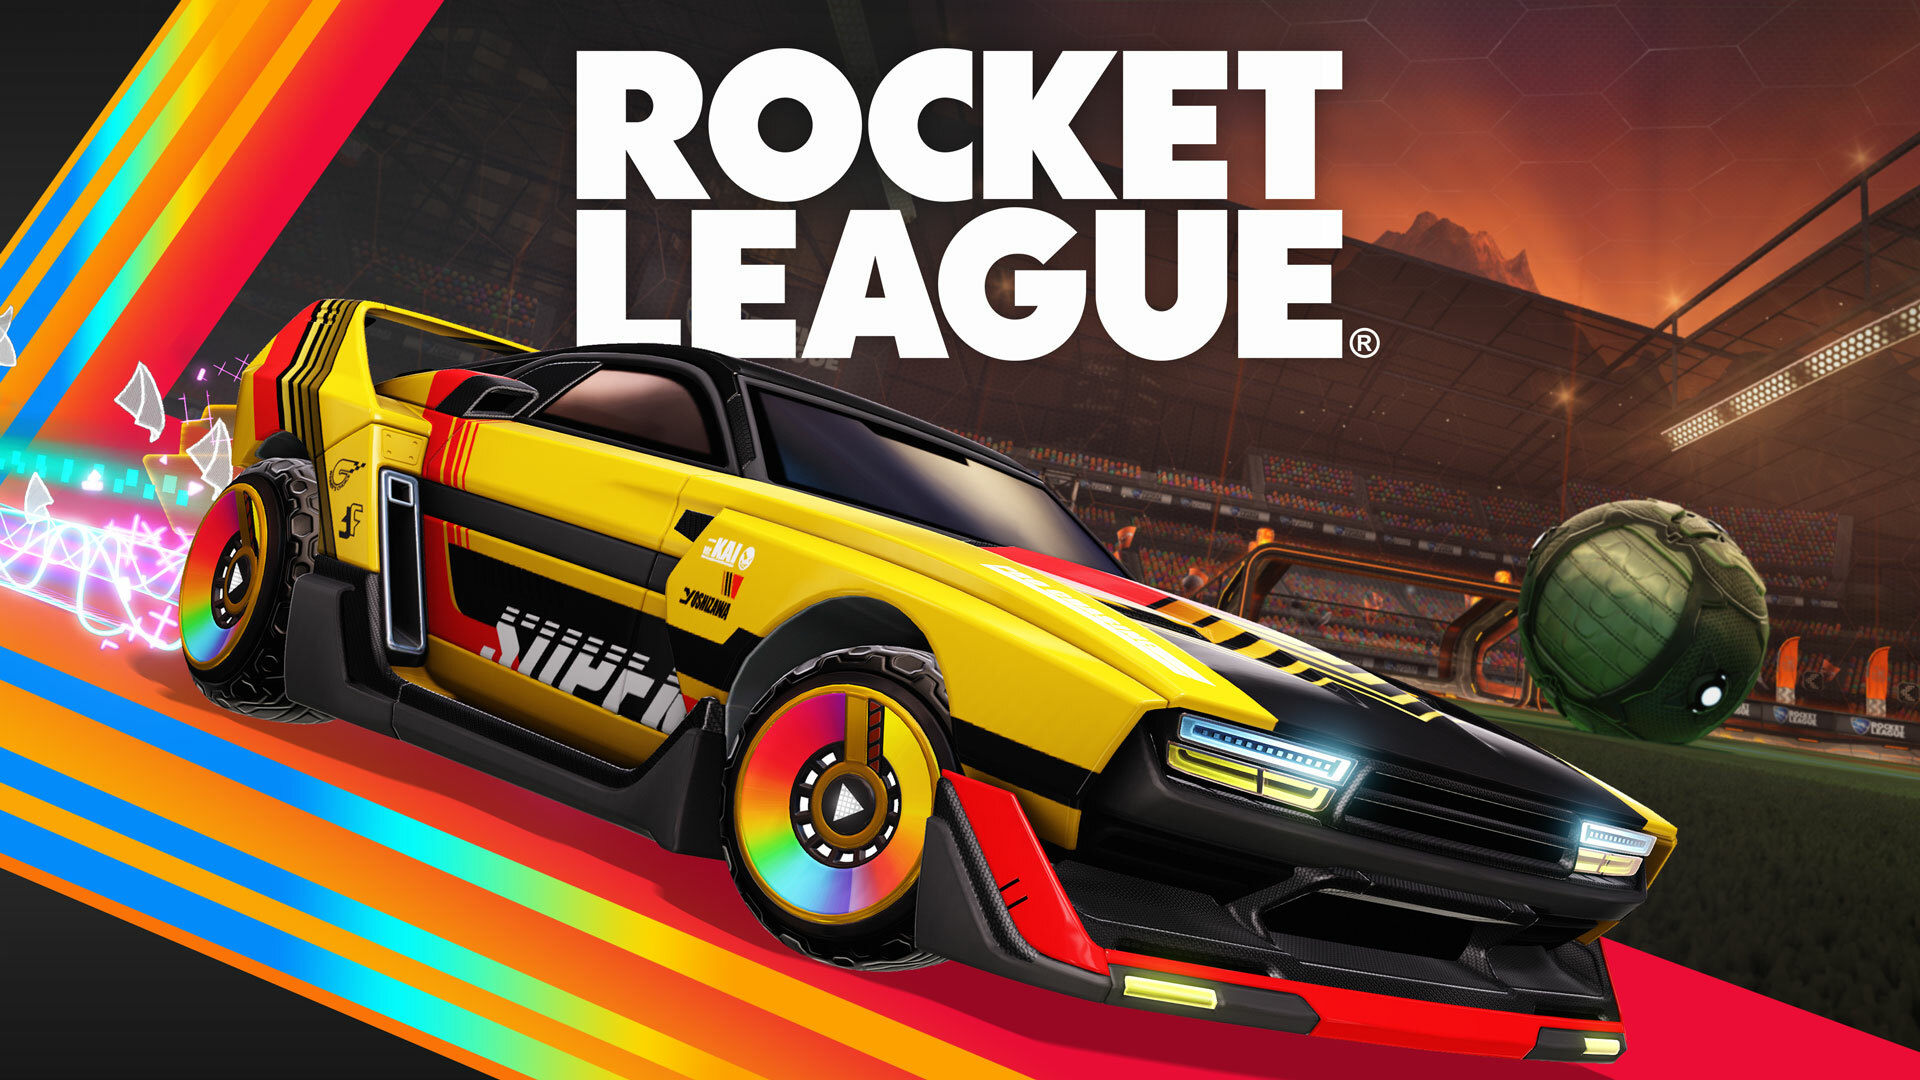 Rust-eze Decal  Rocket League Garage